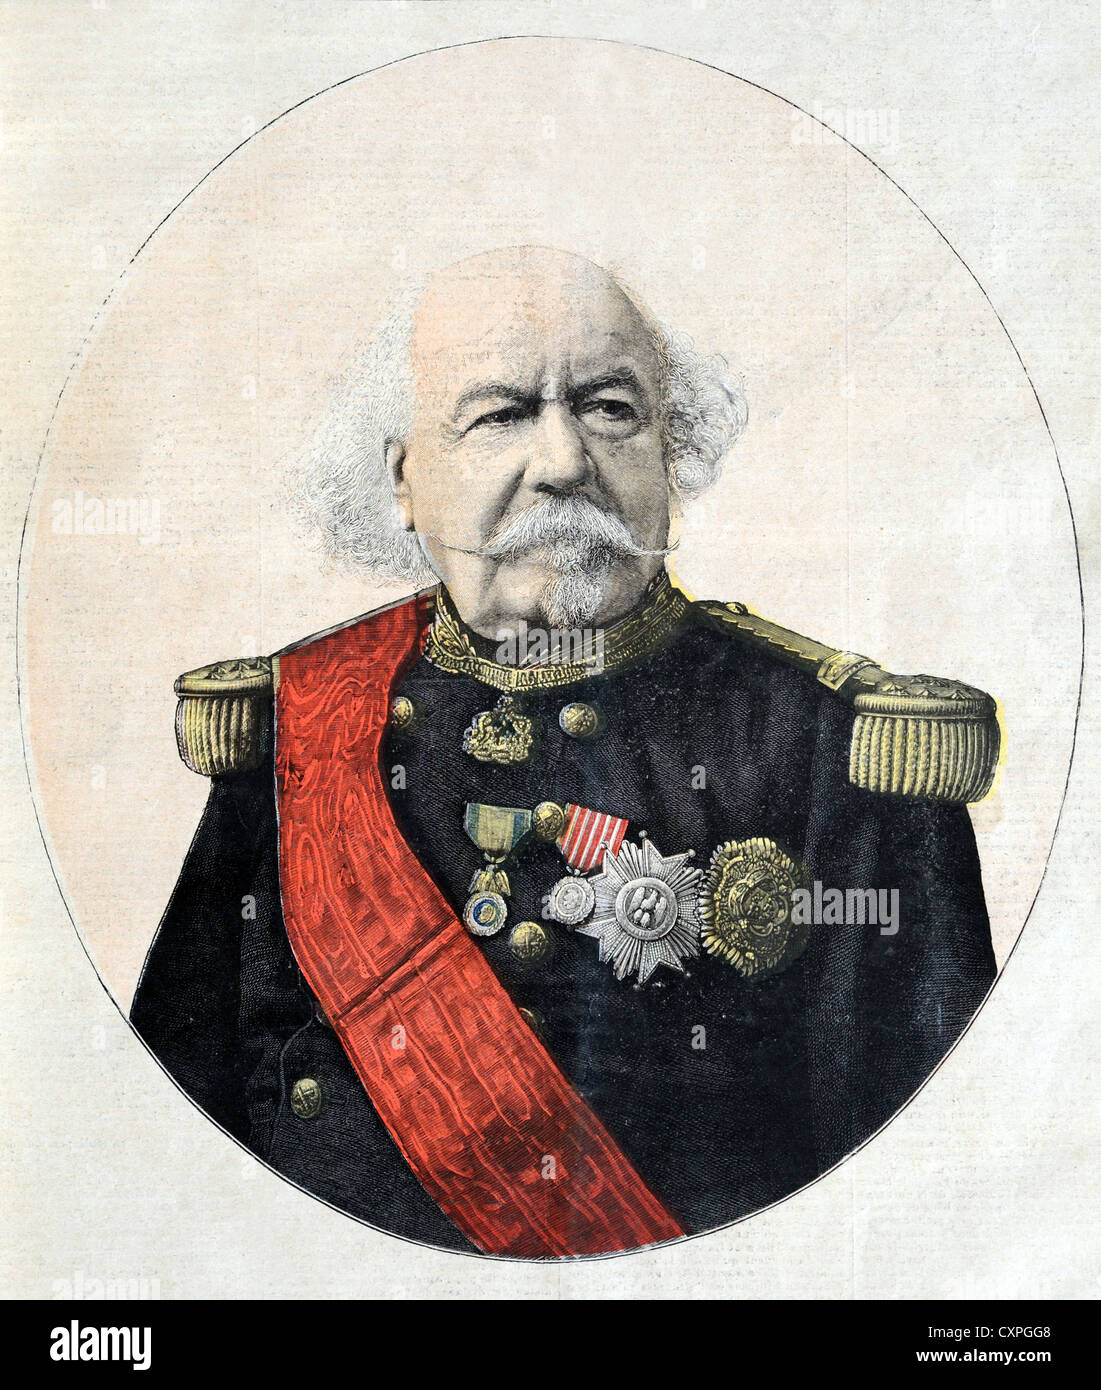 Porträt eines gewissen Canrobert (1809-1895) Marschall von Frankreich in französischer Militäruniform. François Vintage Illustration oder Old Engraving Stockfoto